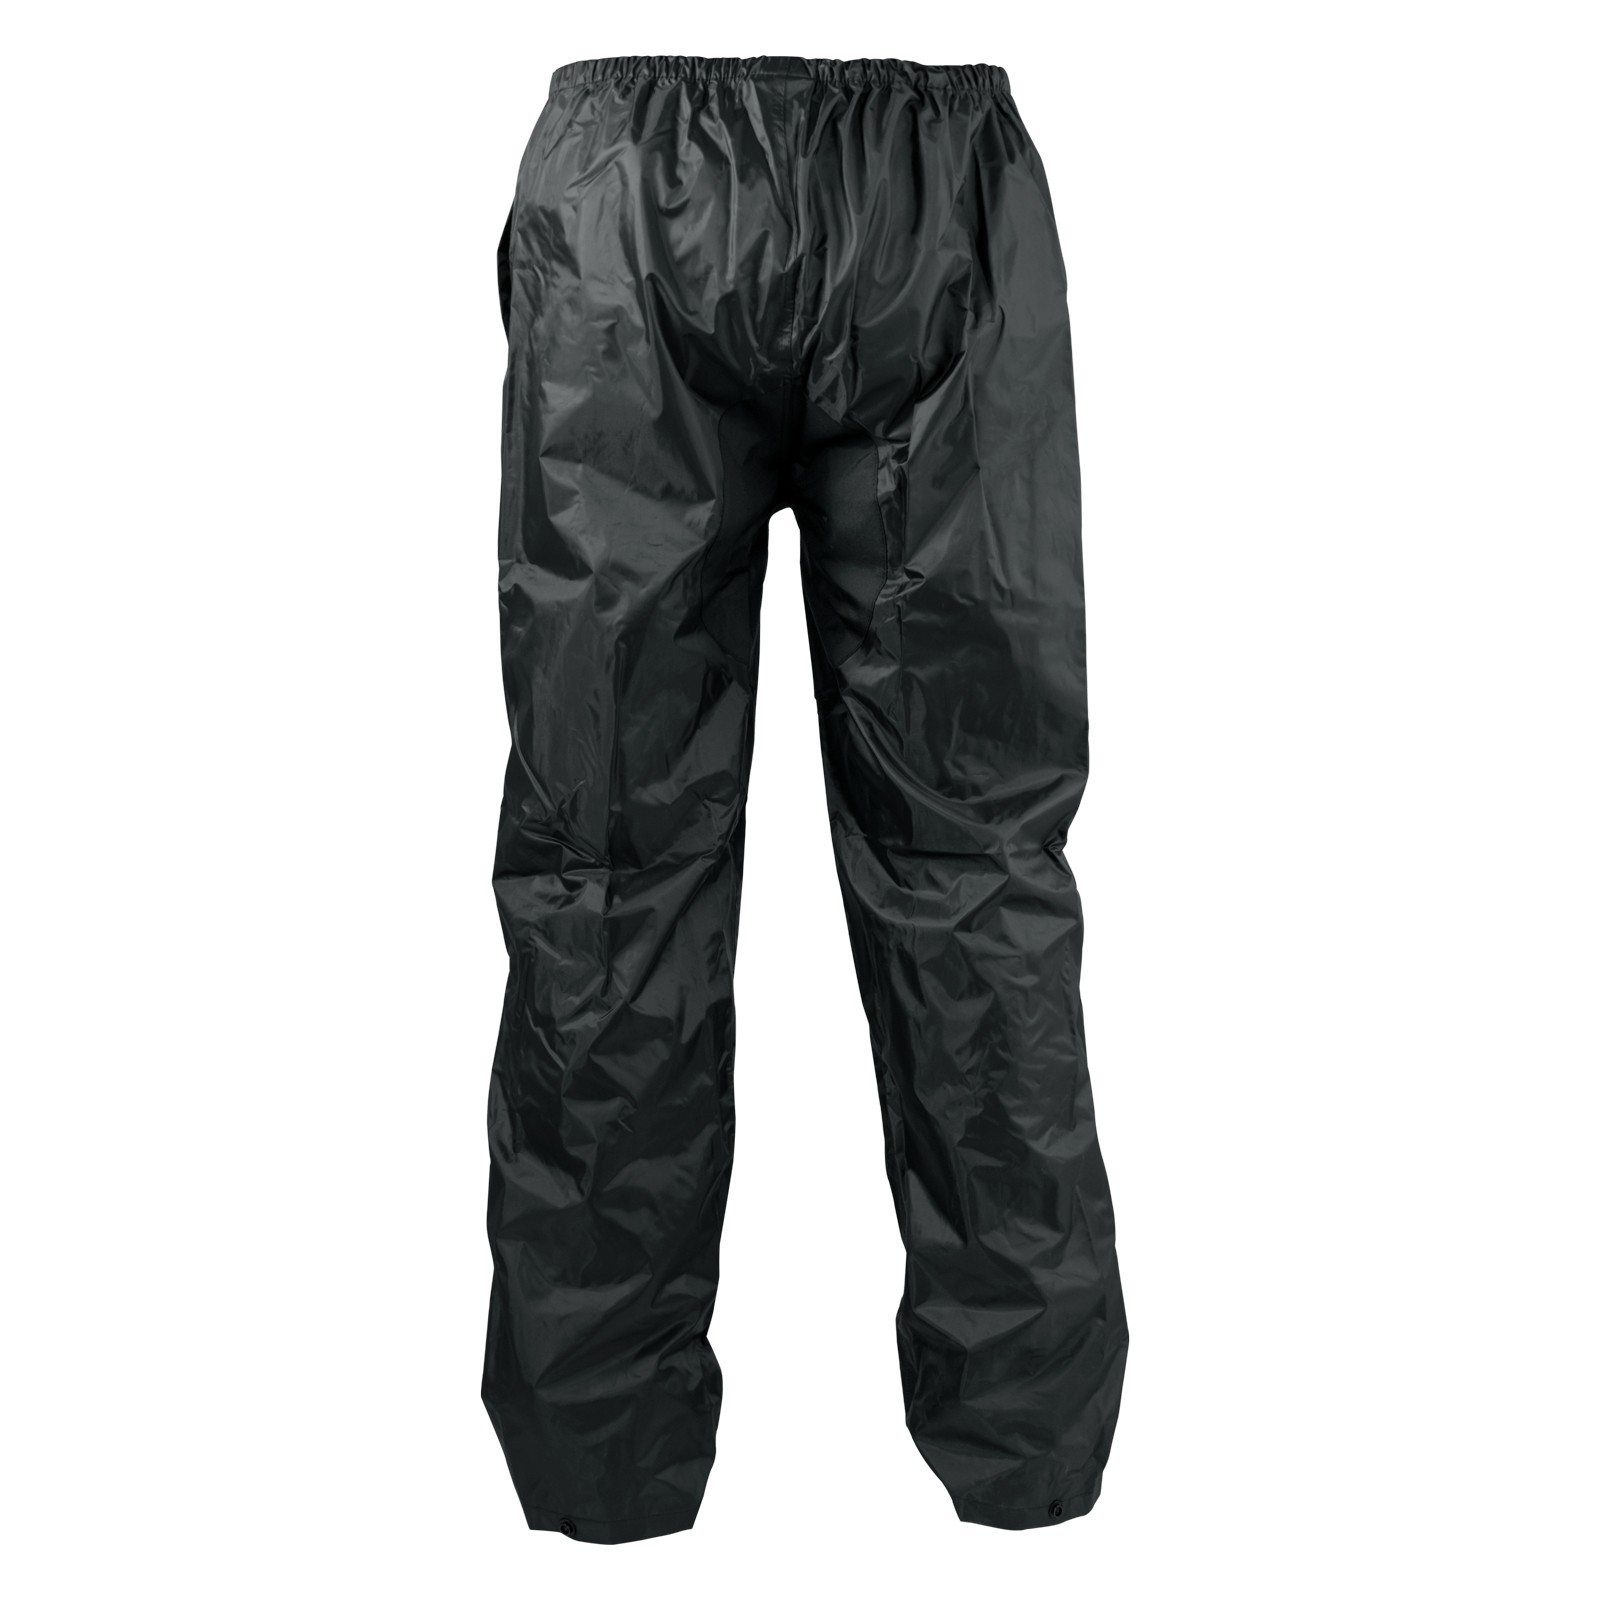 Abbigliamento Moto e Accessori - Pantaloni Antipioggia Impermeabili  Antiacqua Foderato Inserti Riflettenti Moto